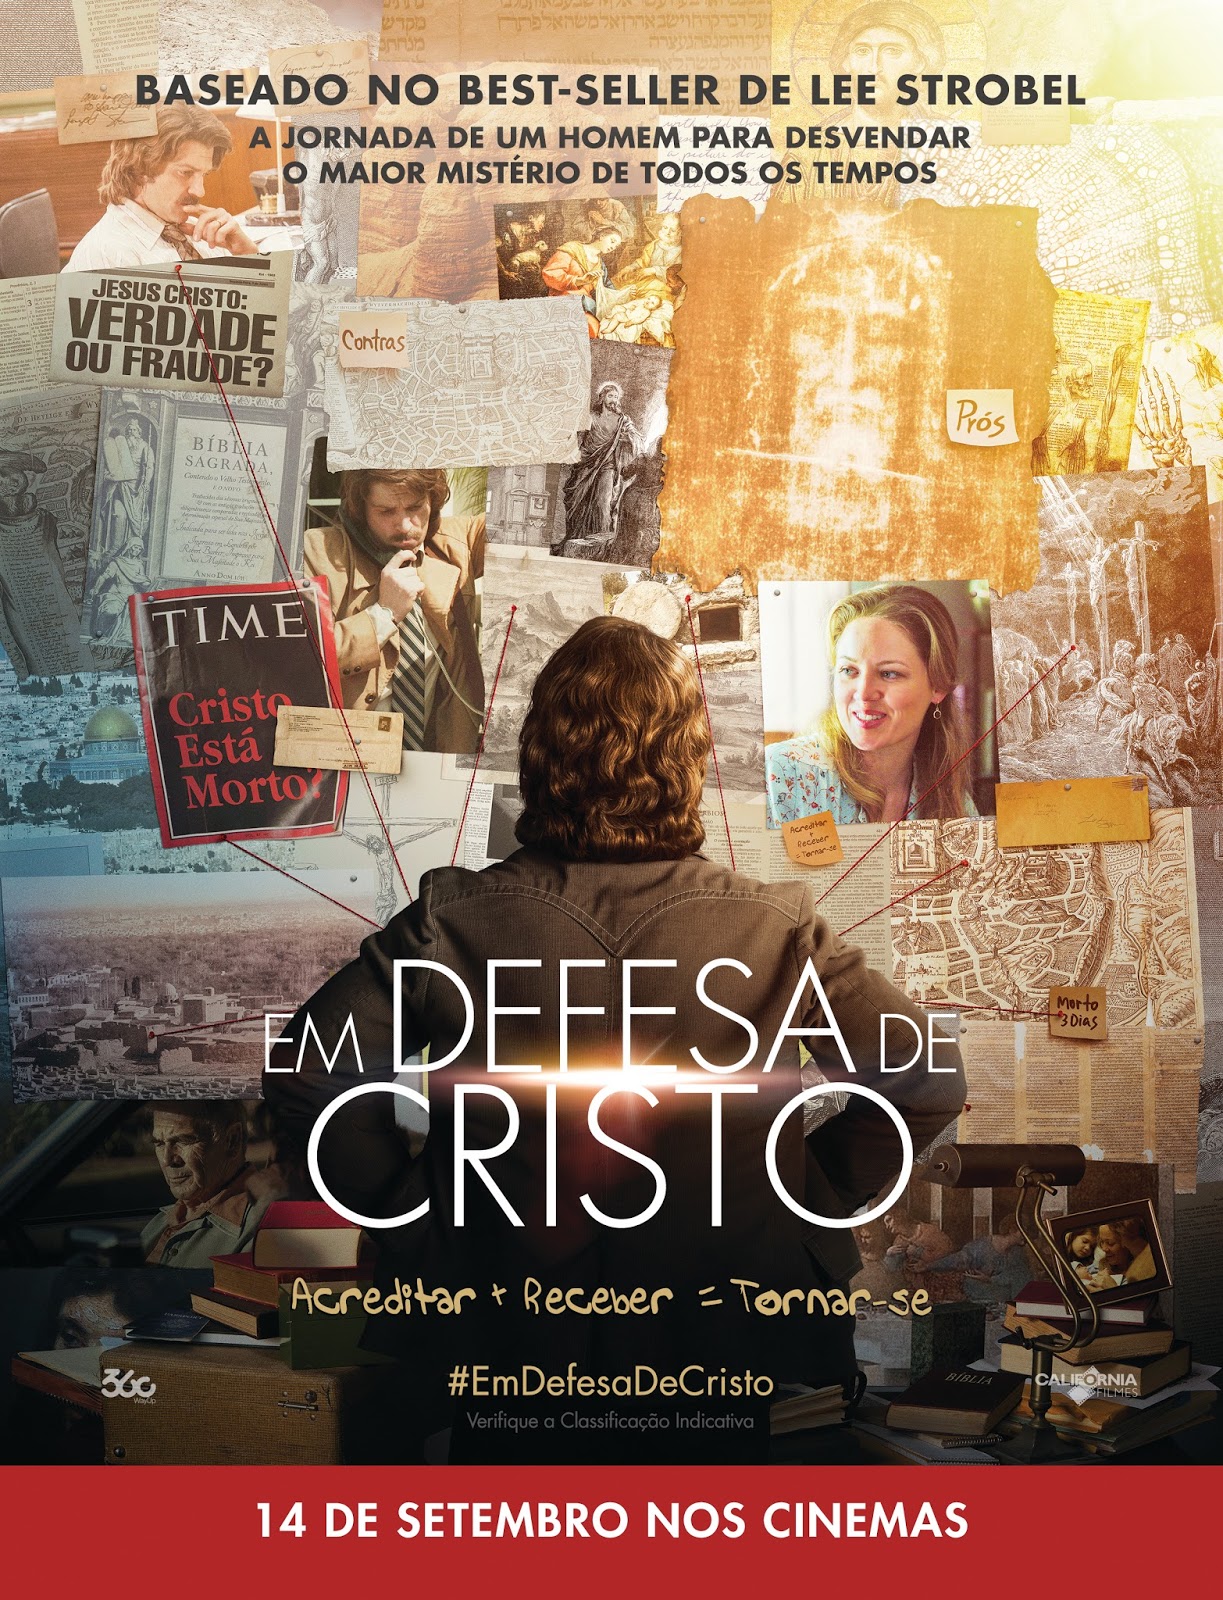 Cine Cristão: abril 2017